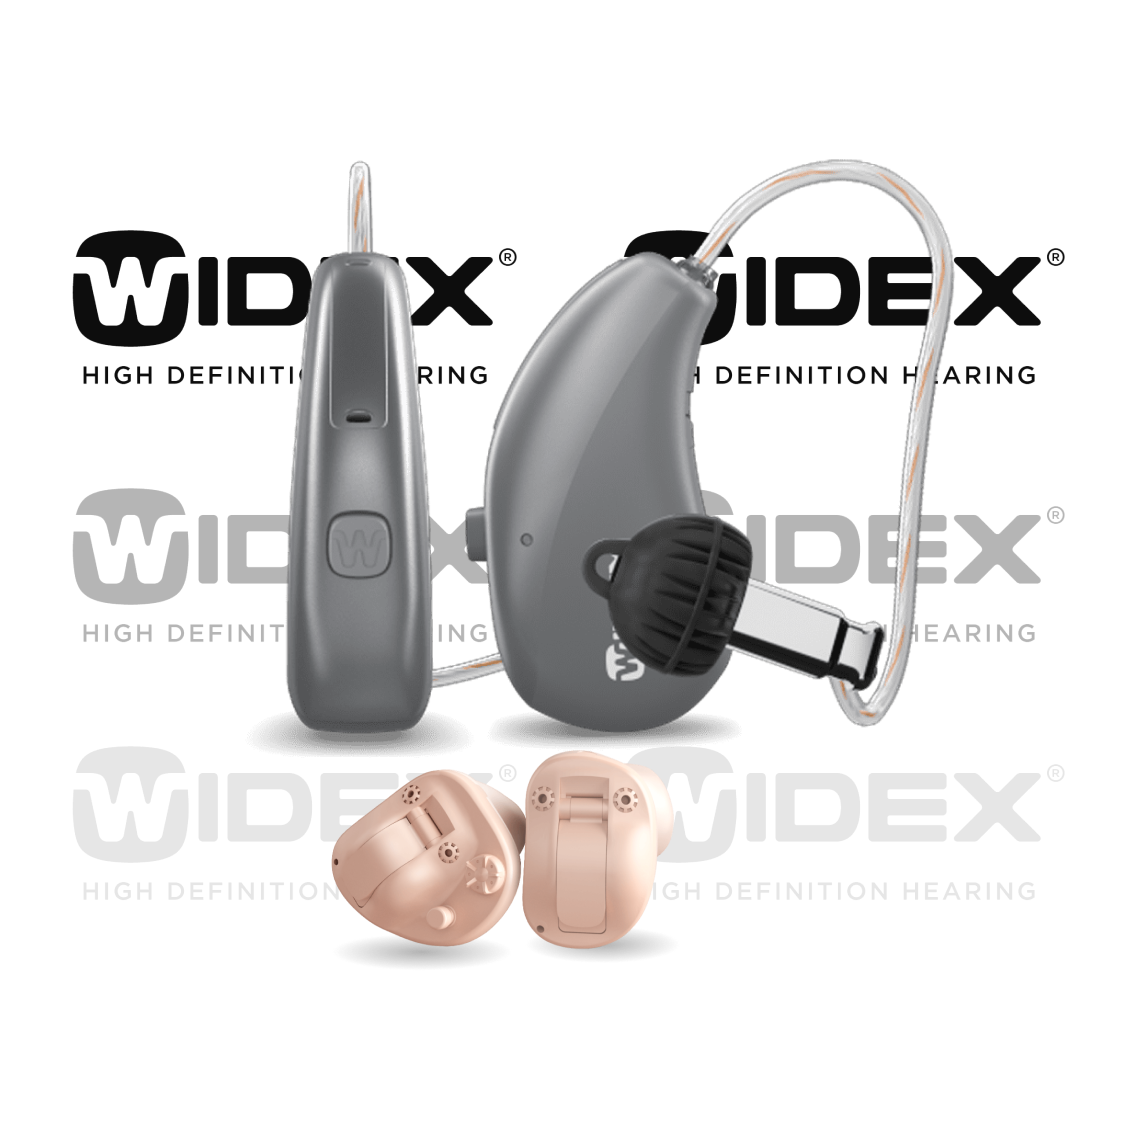 Widex-Hörgeräte mit Widex-Logo